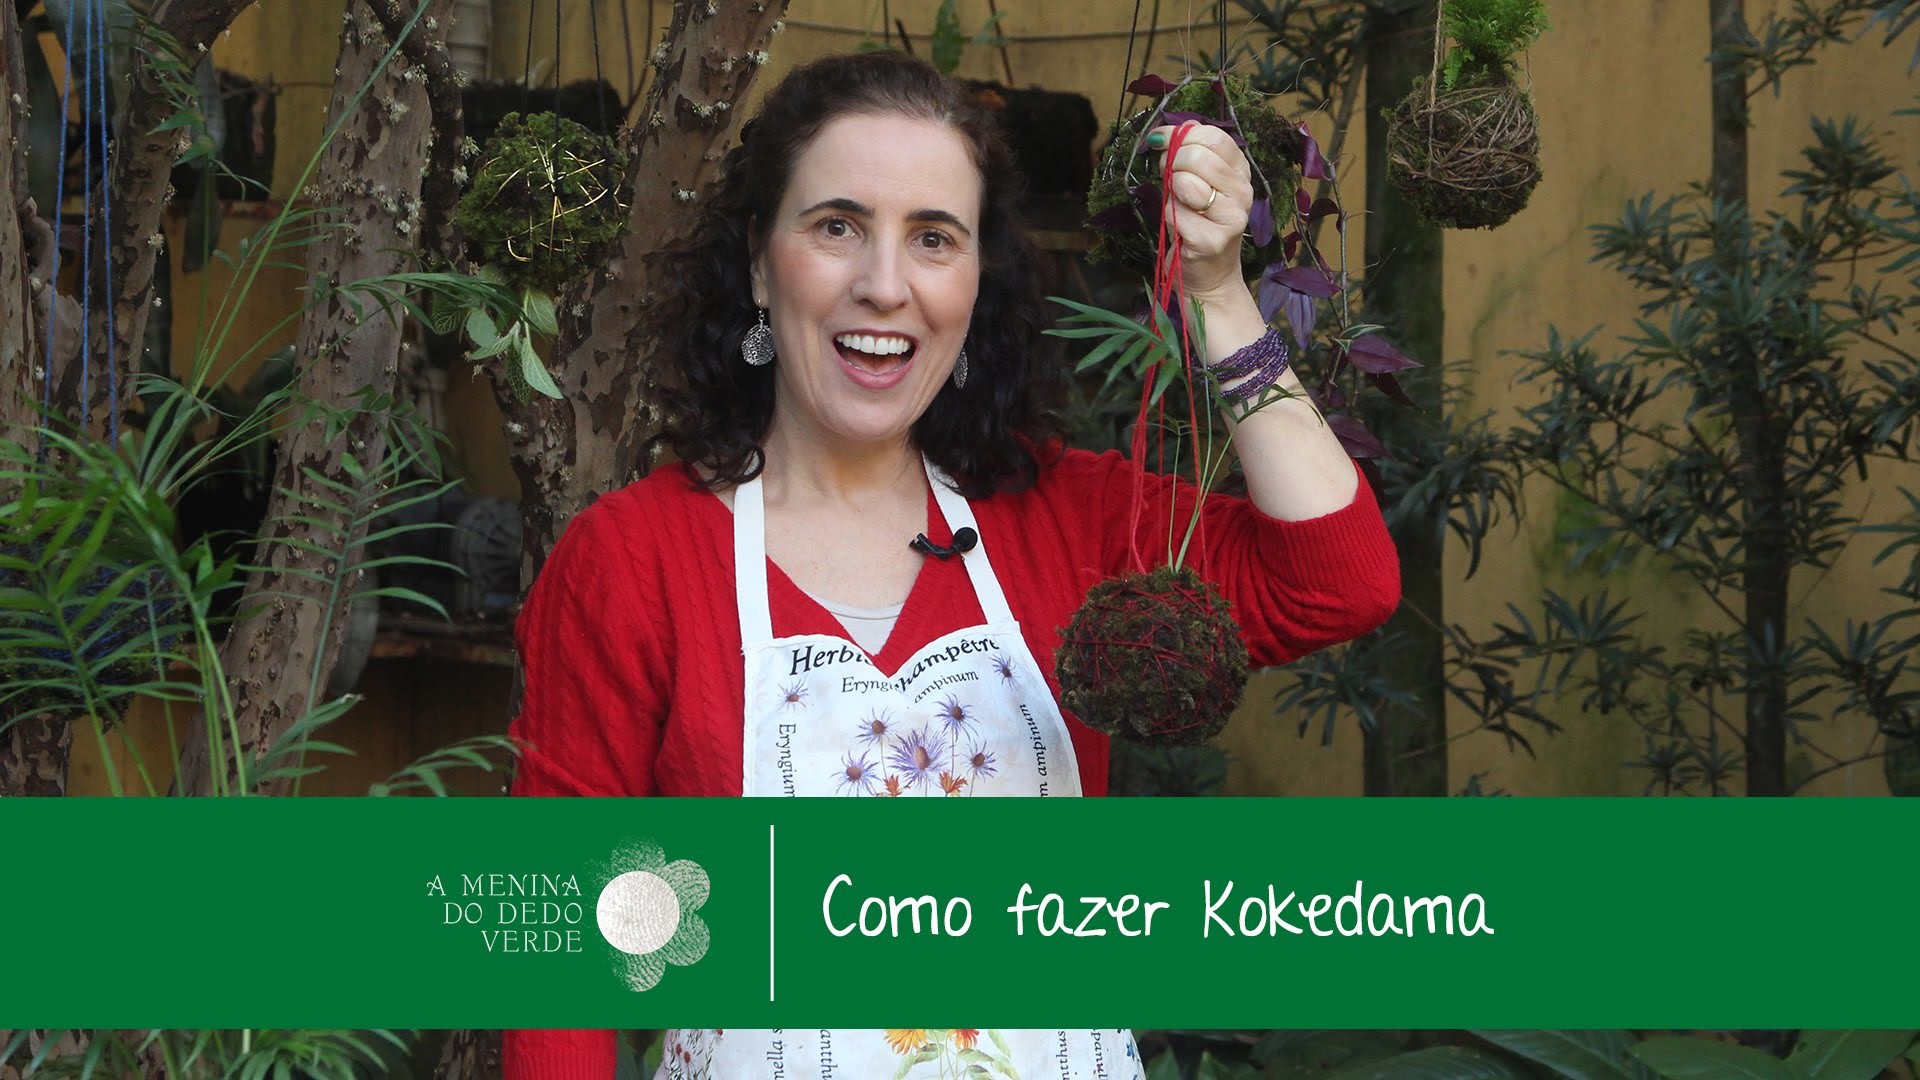 Como Fazer Kokedama.How to Make Kokedama - A Menina do Dedo Verde